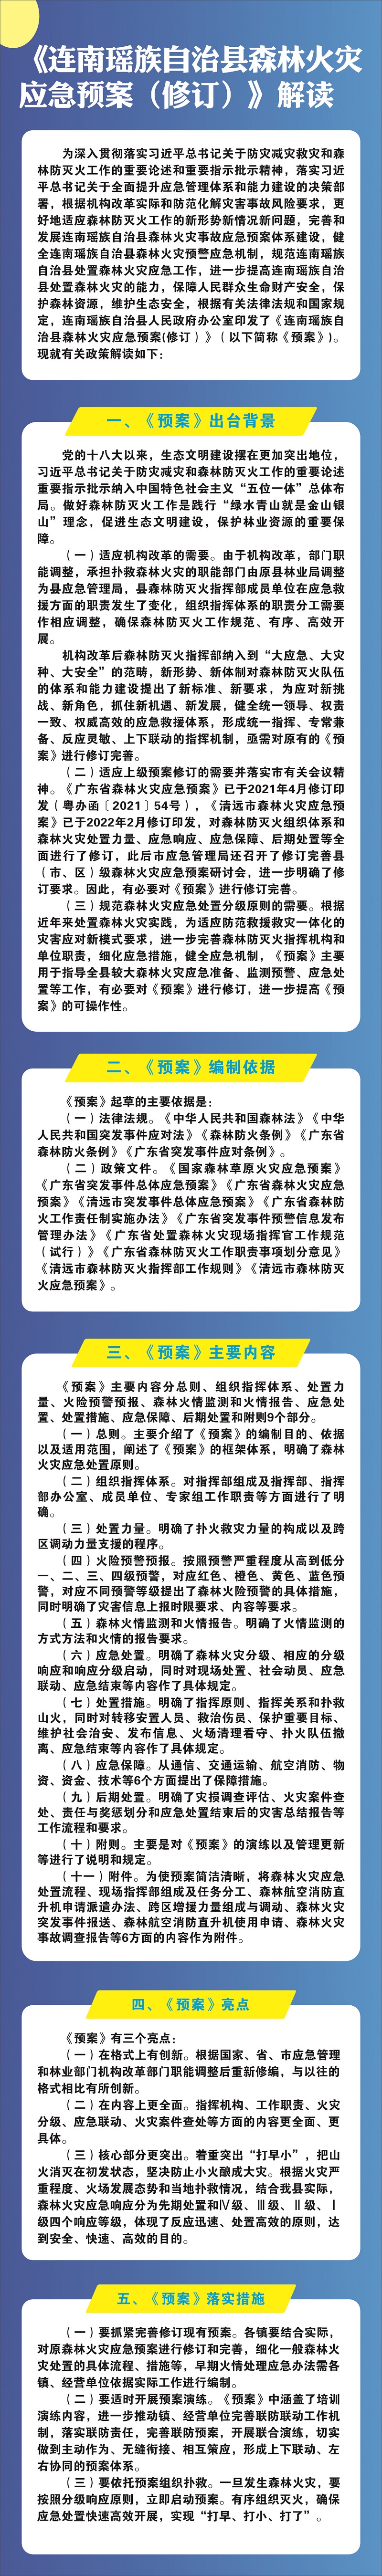 《连南瑶族自治县森林火灾应急预案（修订）》图文解读.jpg